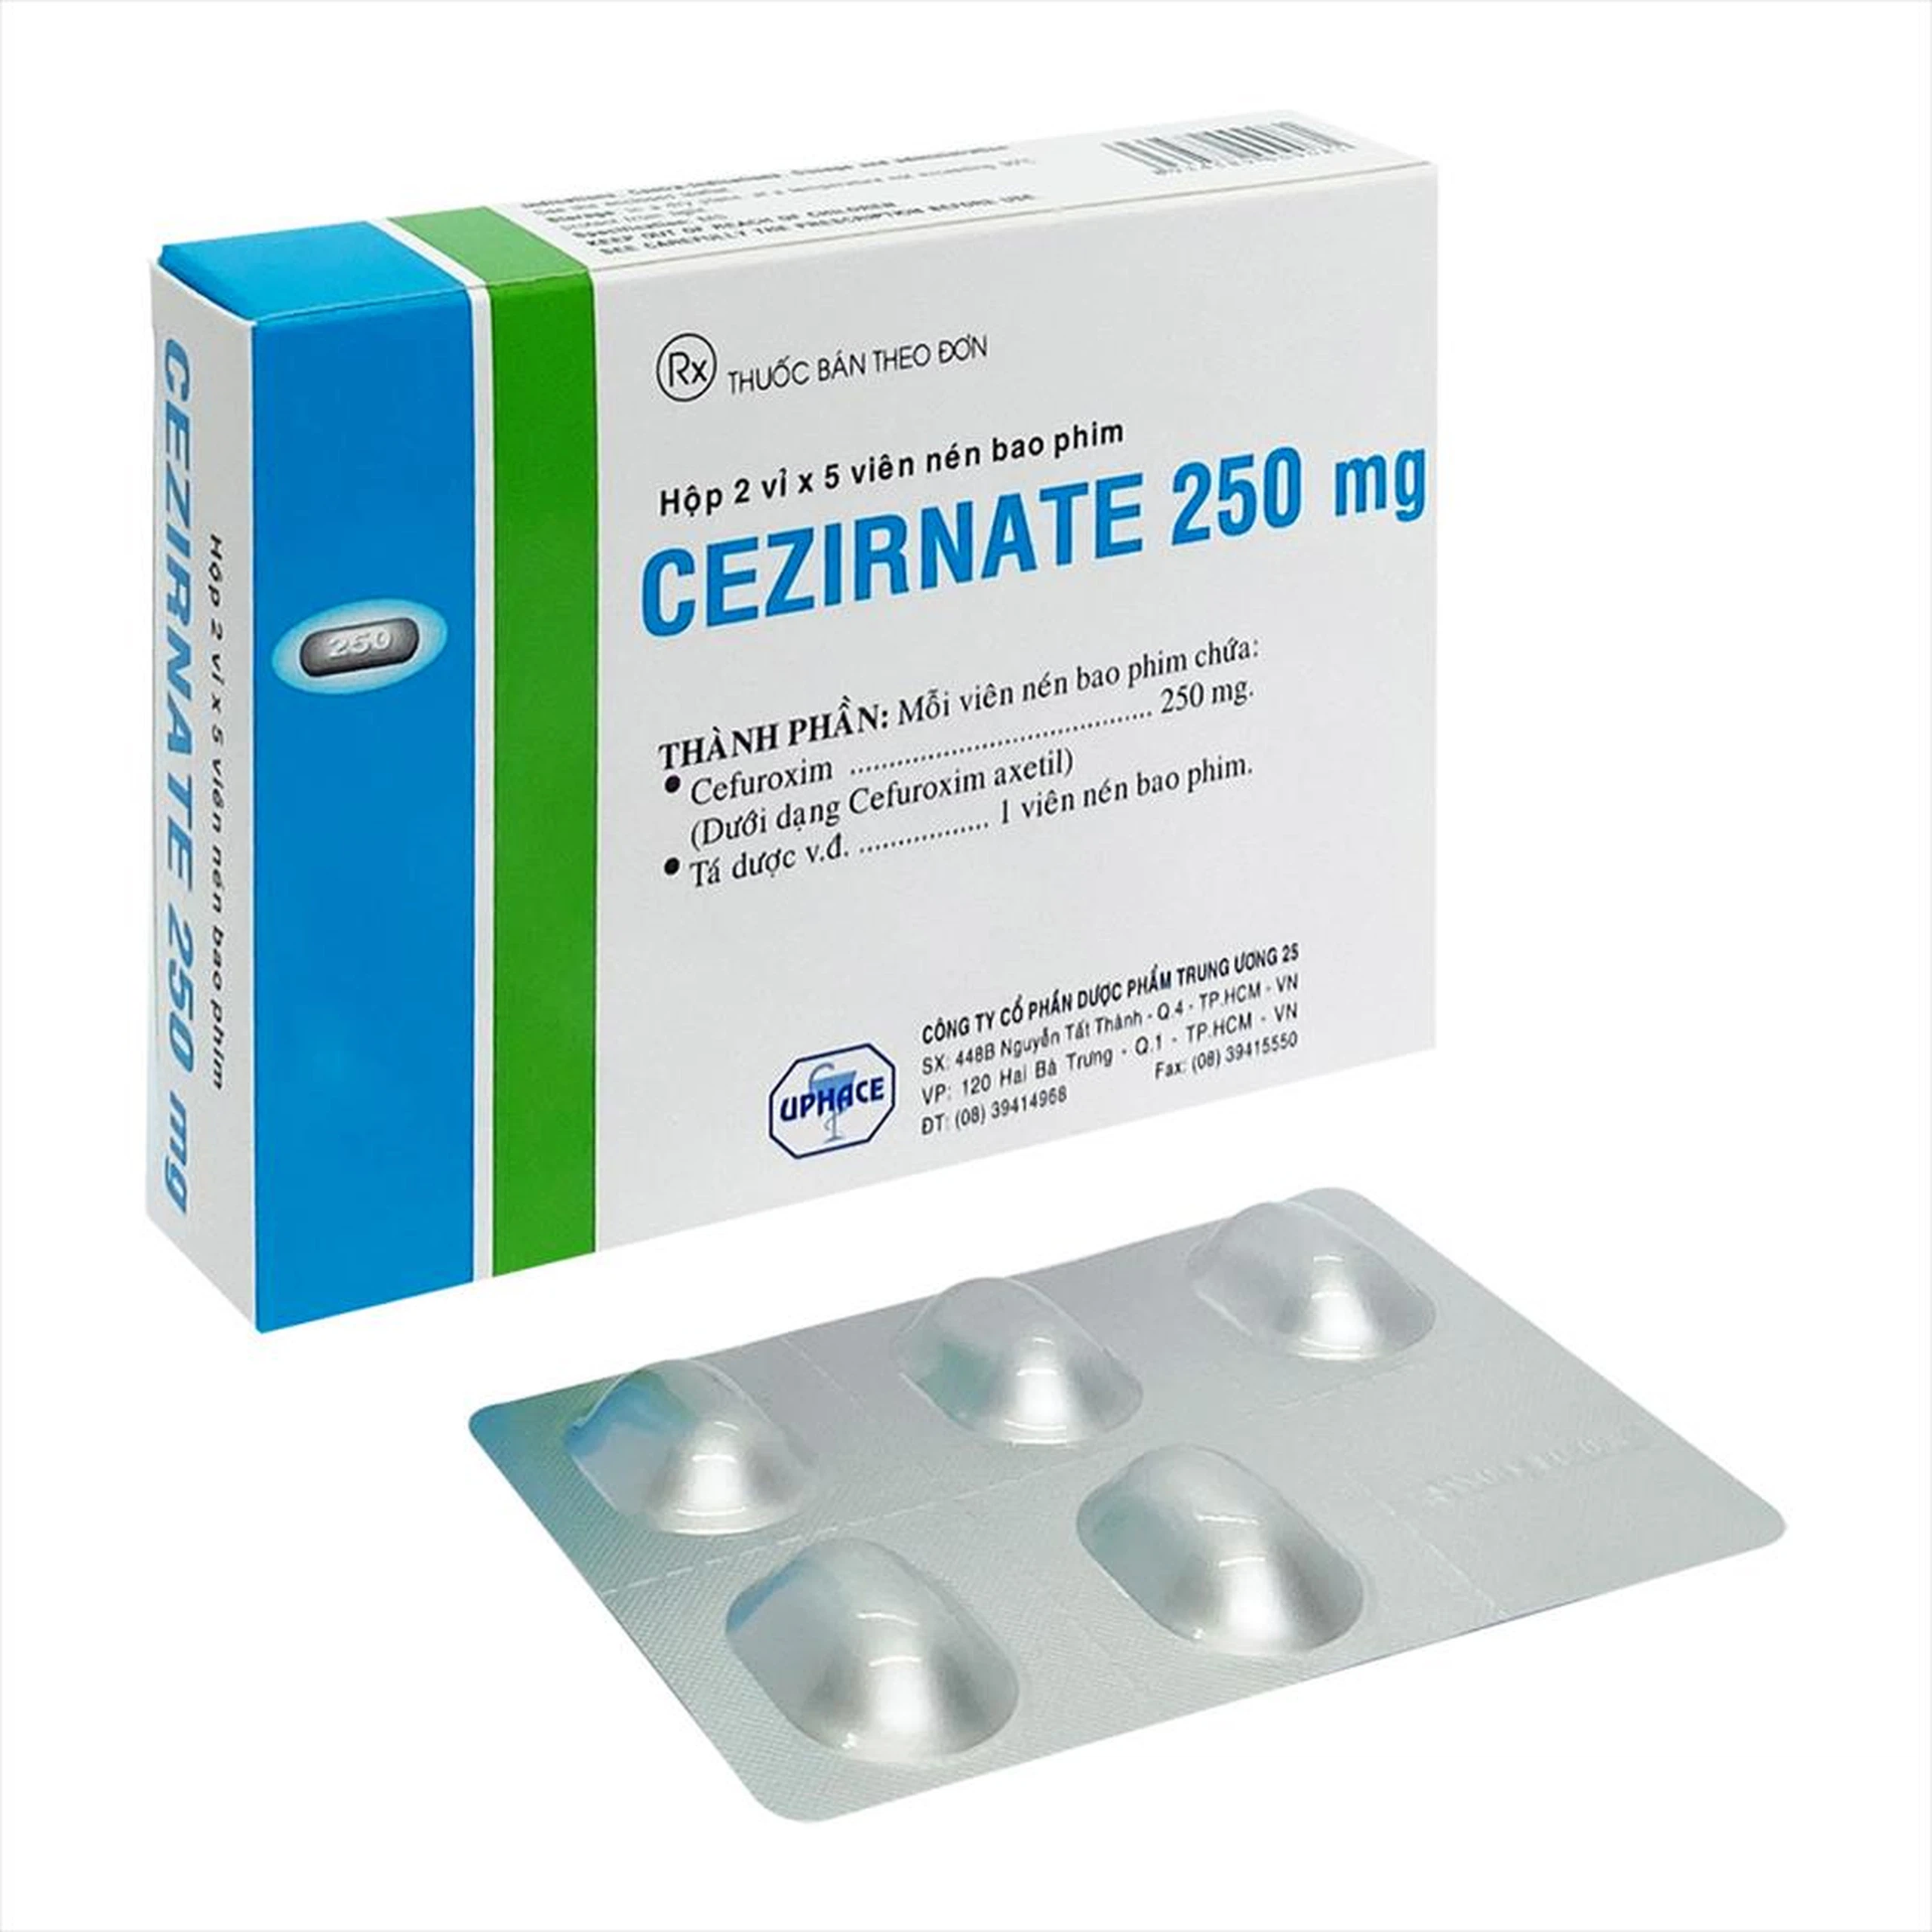 Thuốc Cezirnate 250 mg Uphace điều trị nhiễm khuẩn thể nhẹ đến vừa ở đường hô hấp (2 vỉ x 5 viên)